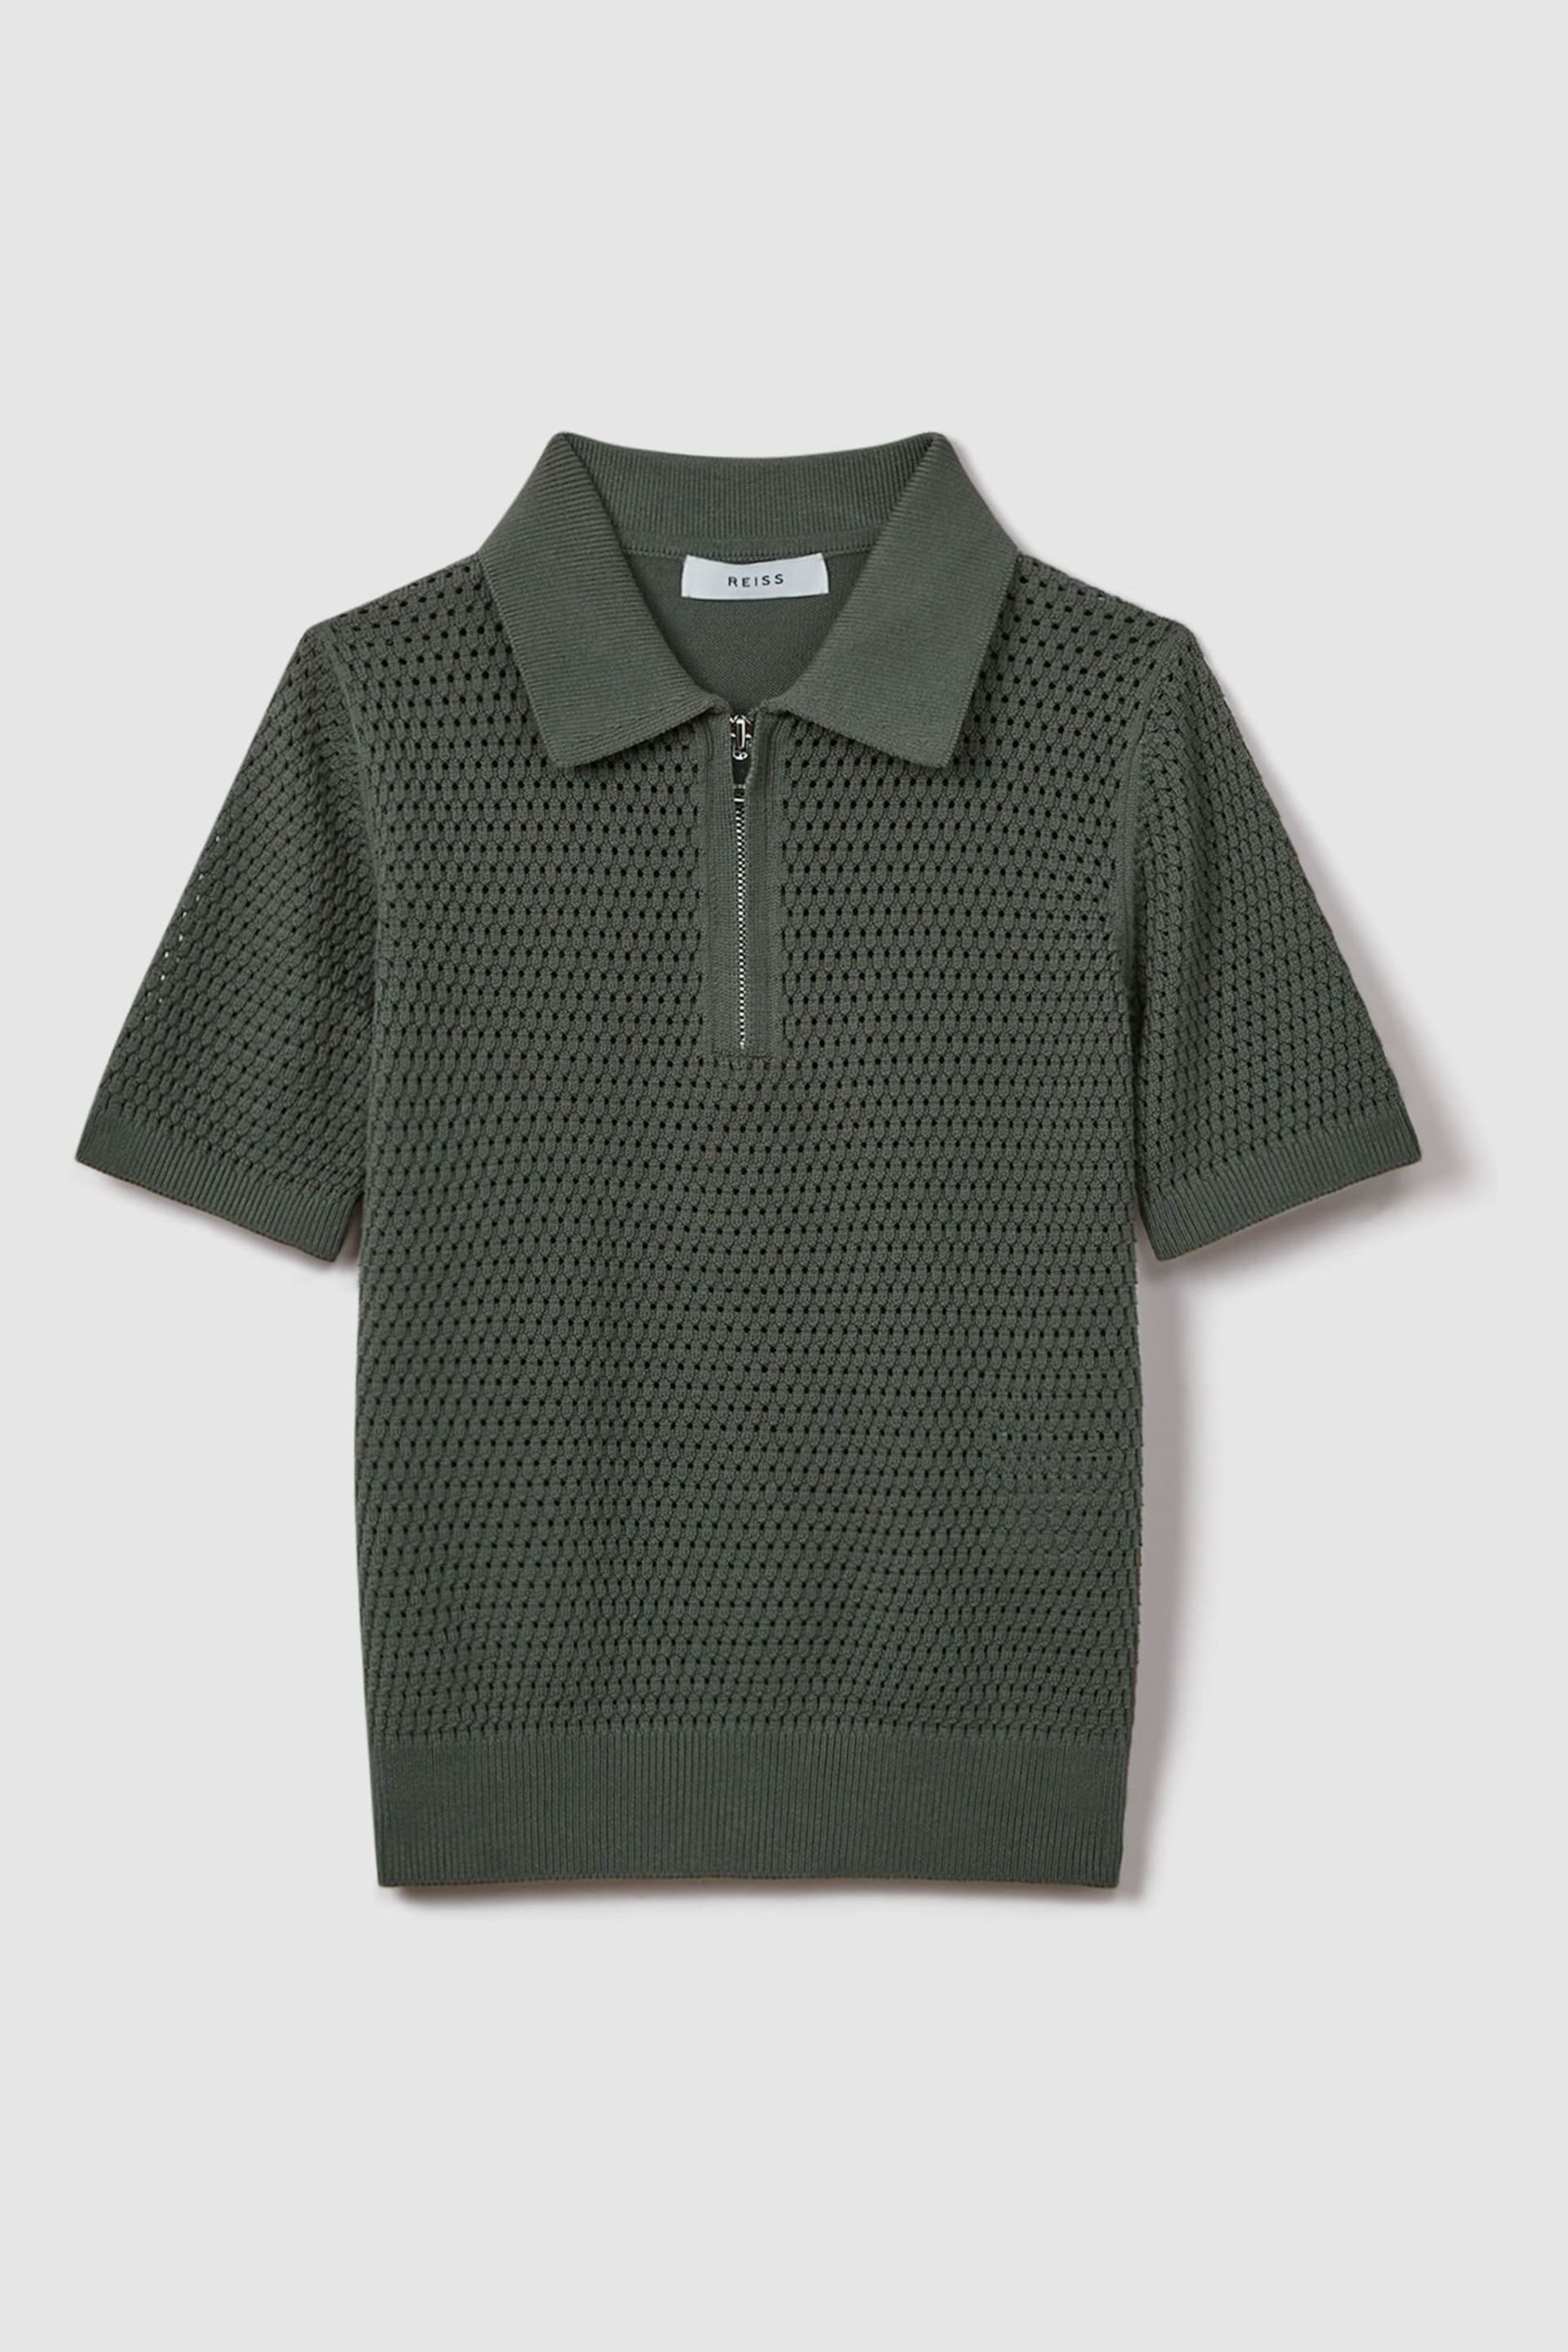 Reiss Dark Sage Burnham Teen Textured Half-Zip Polo T-Shirt - Image 2 of 6